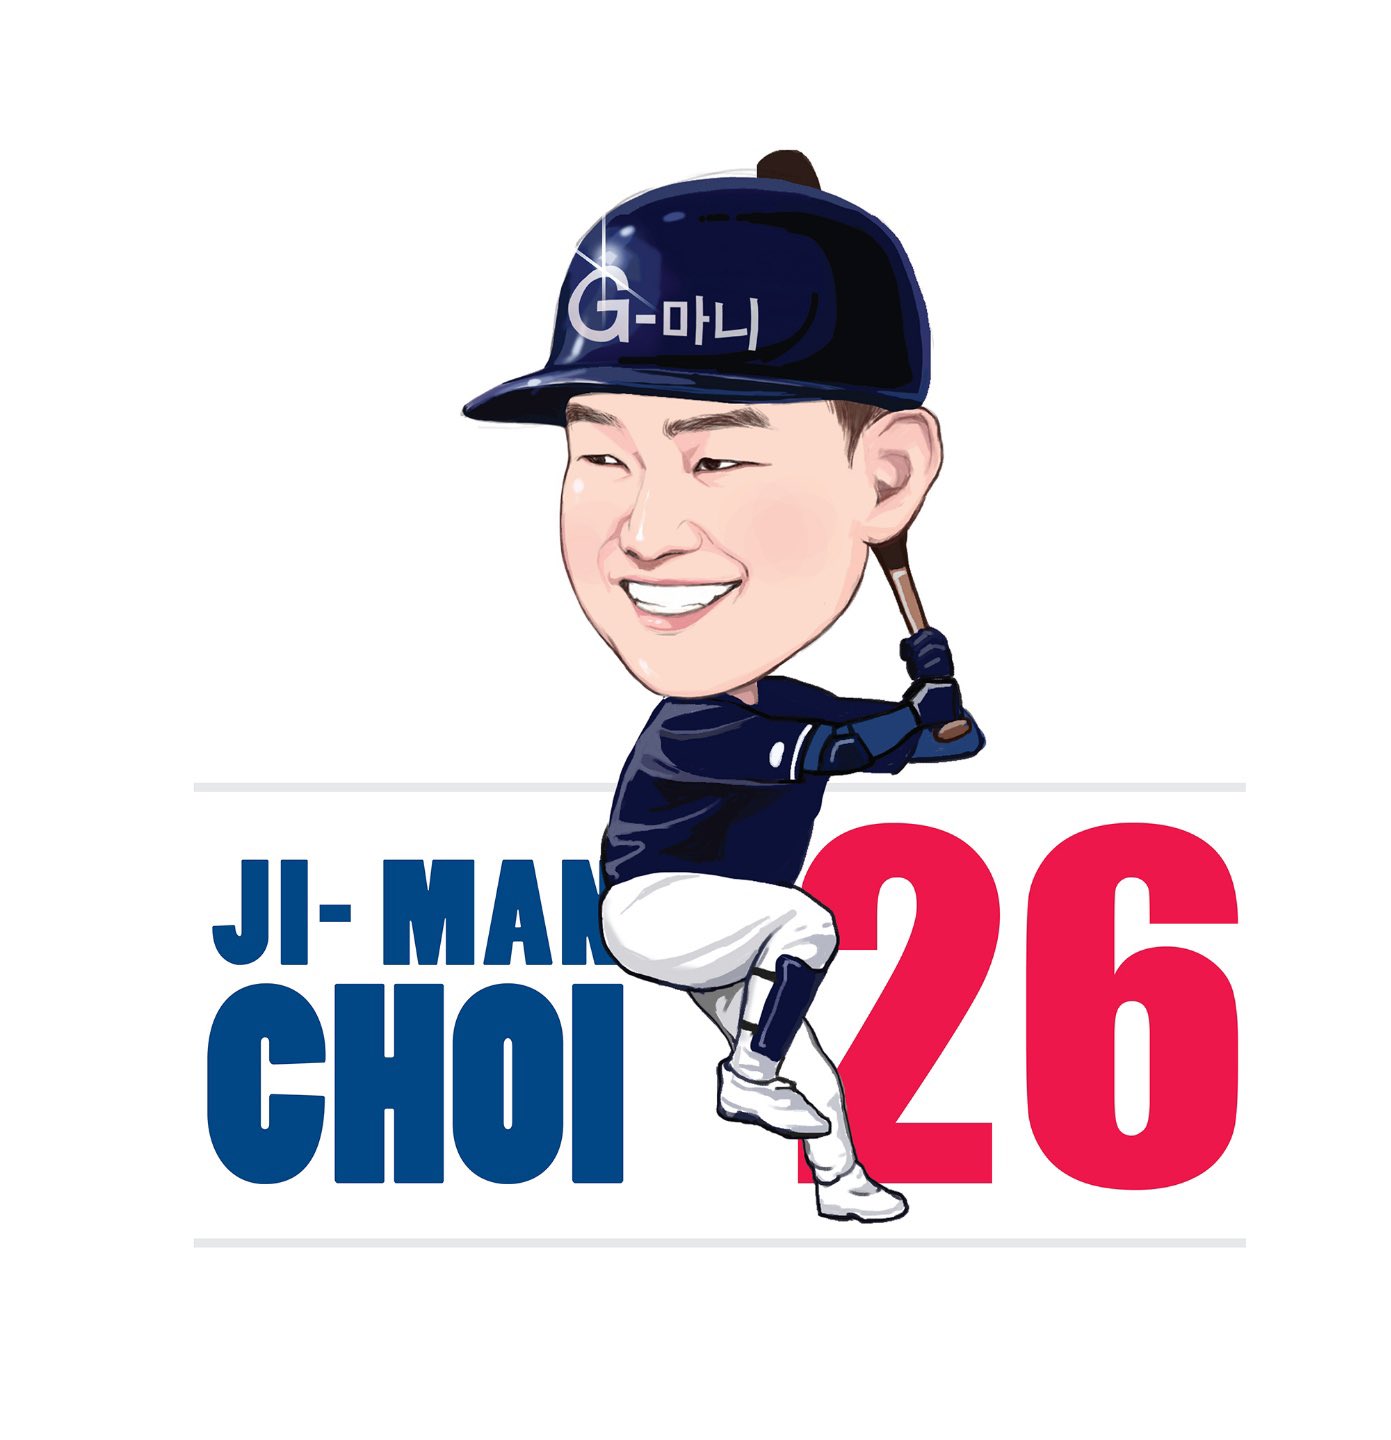 ji-Man Choi 26 on X: G-money  / X